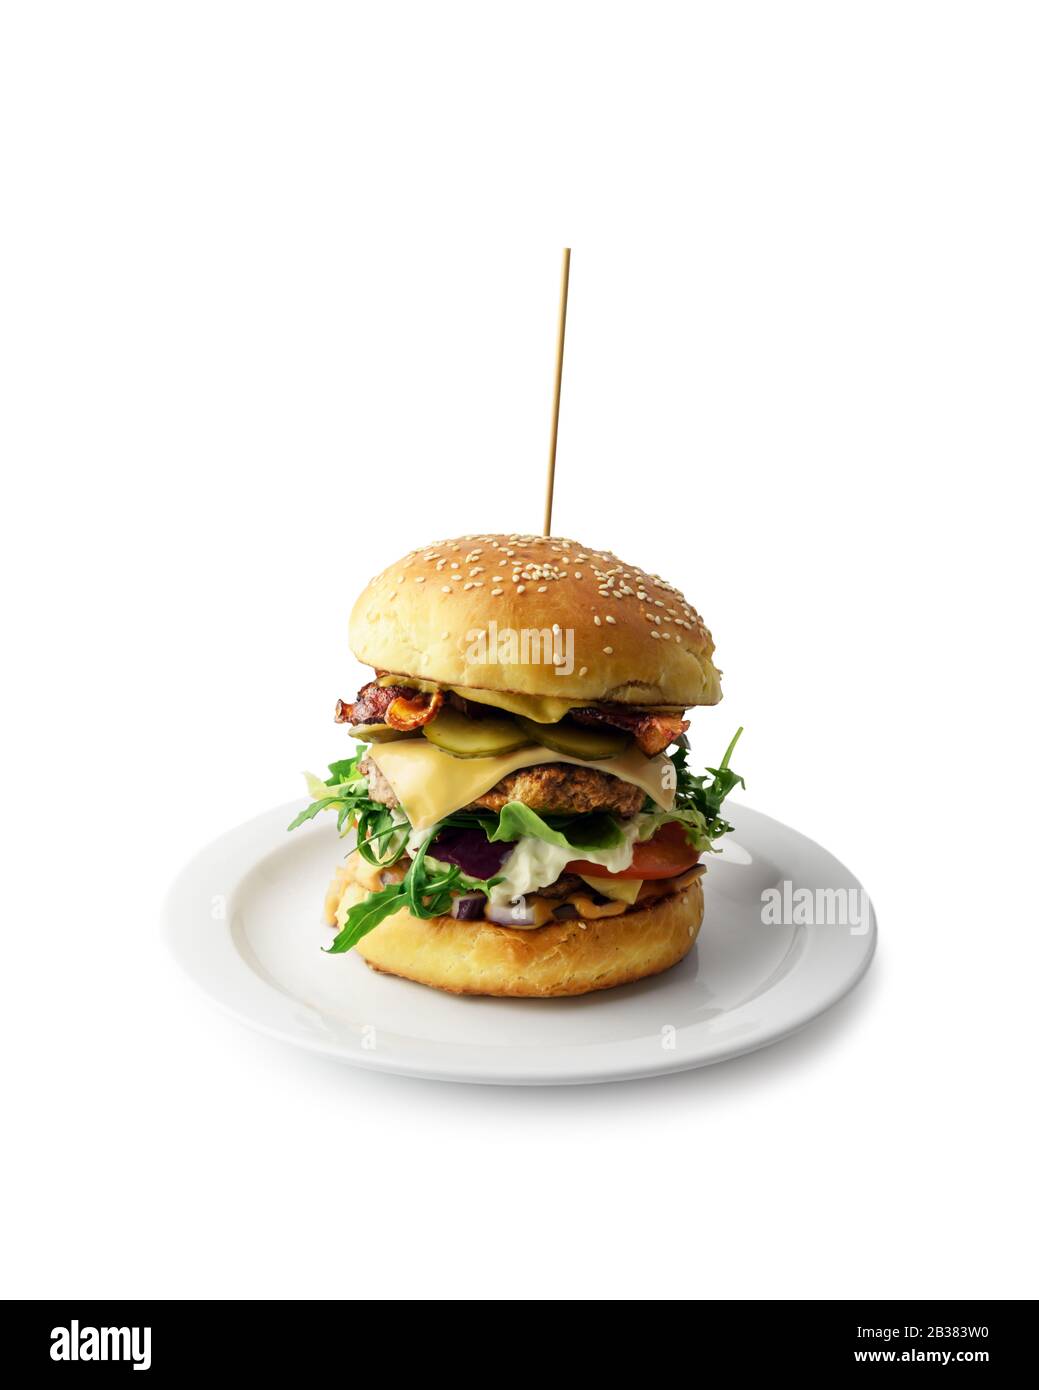 Délicieux cheeseburger sur plaque isolée sur blanc. Photographie alimentaire Banque D'Images